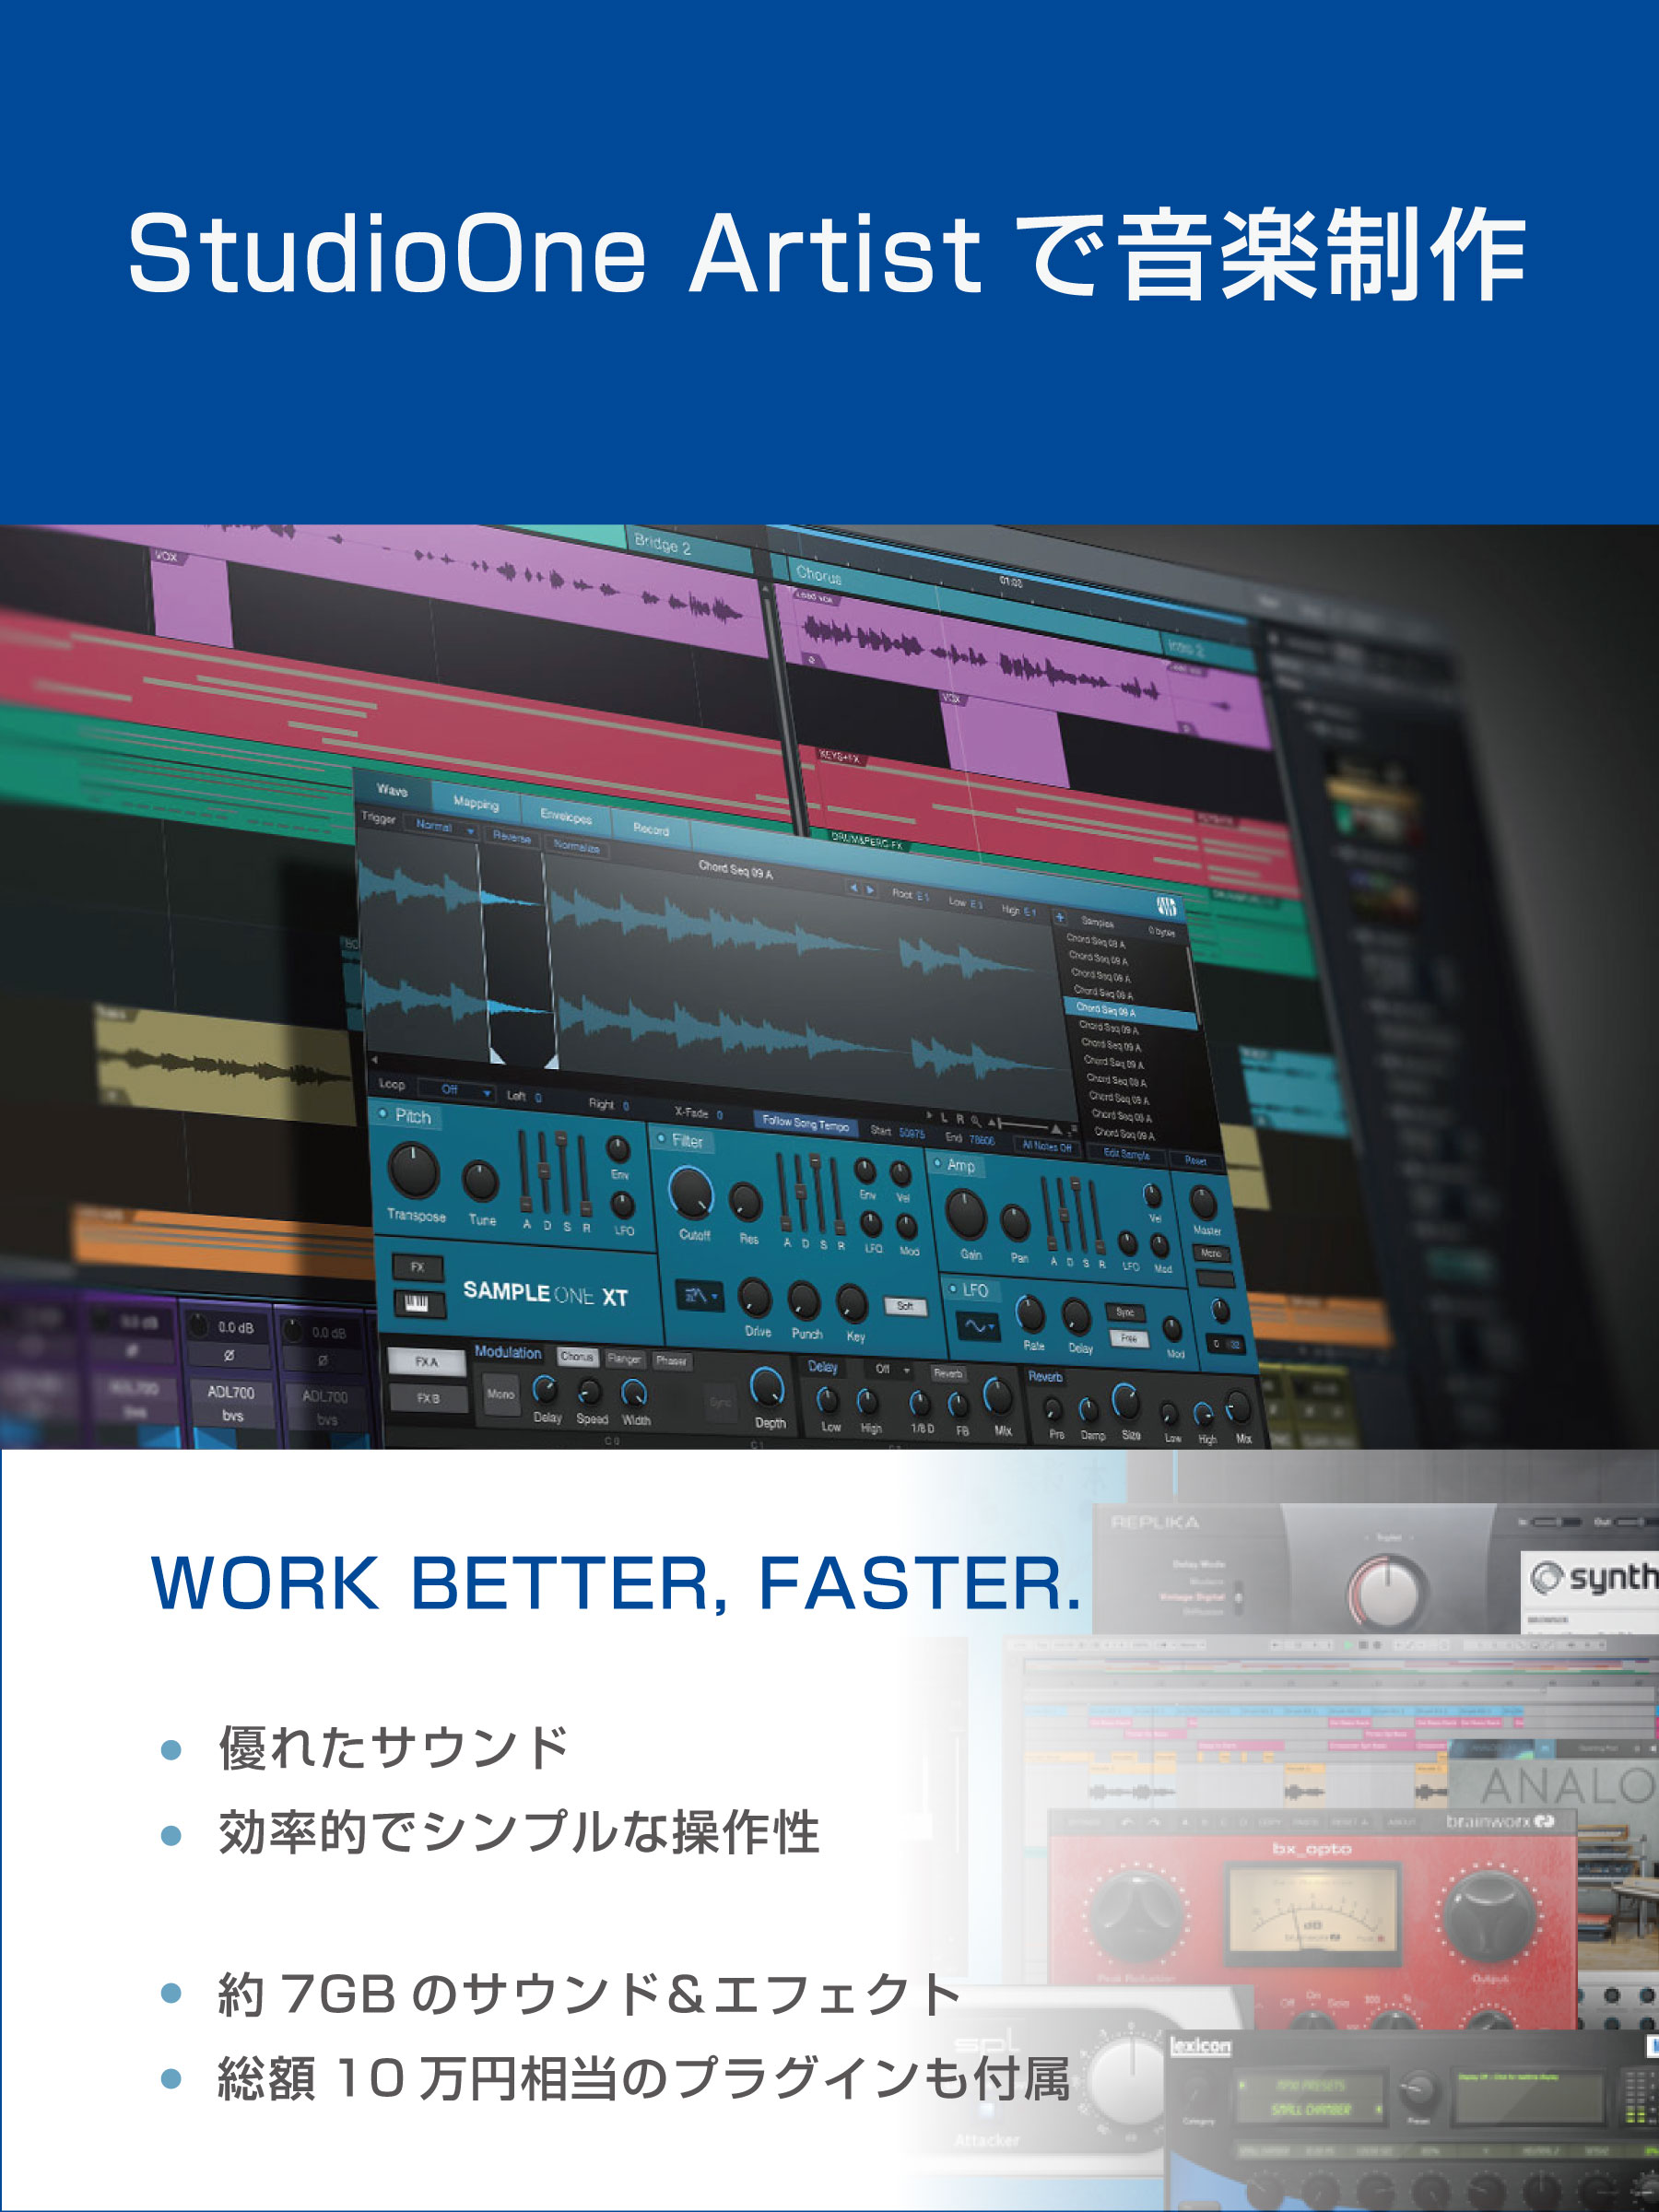 AudioBox iTwo STUDIO アウトレット